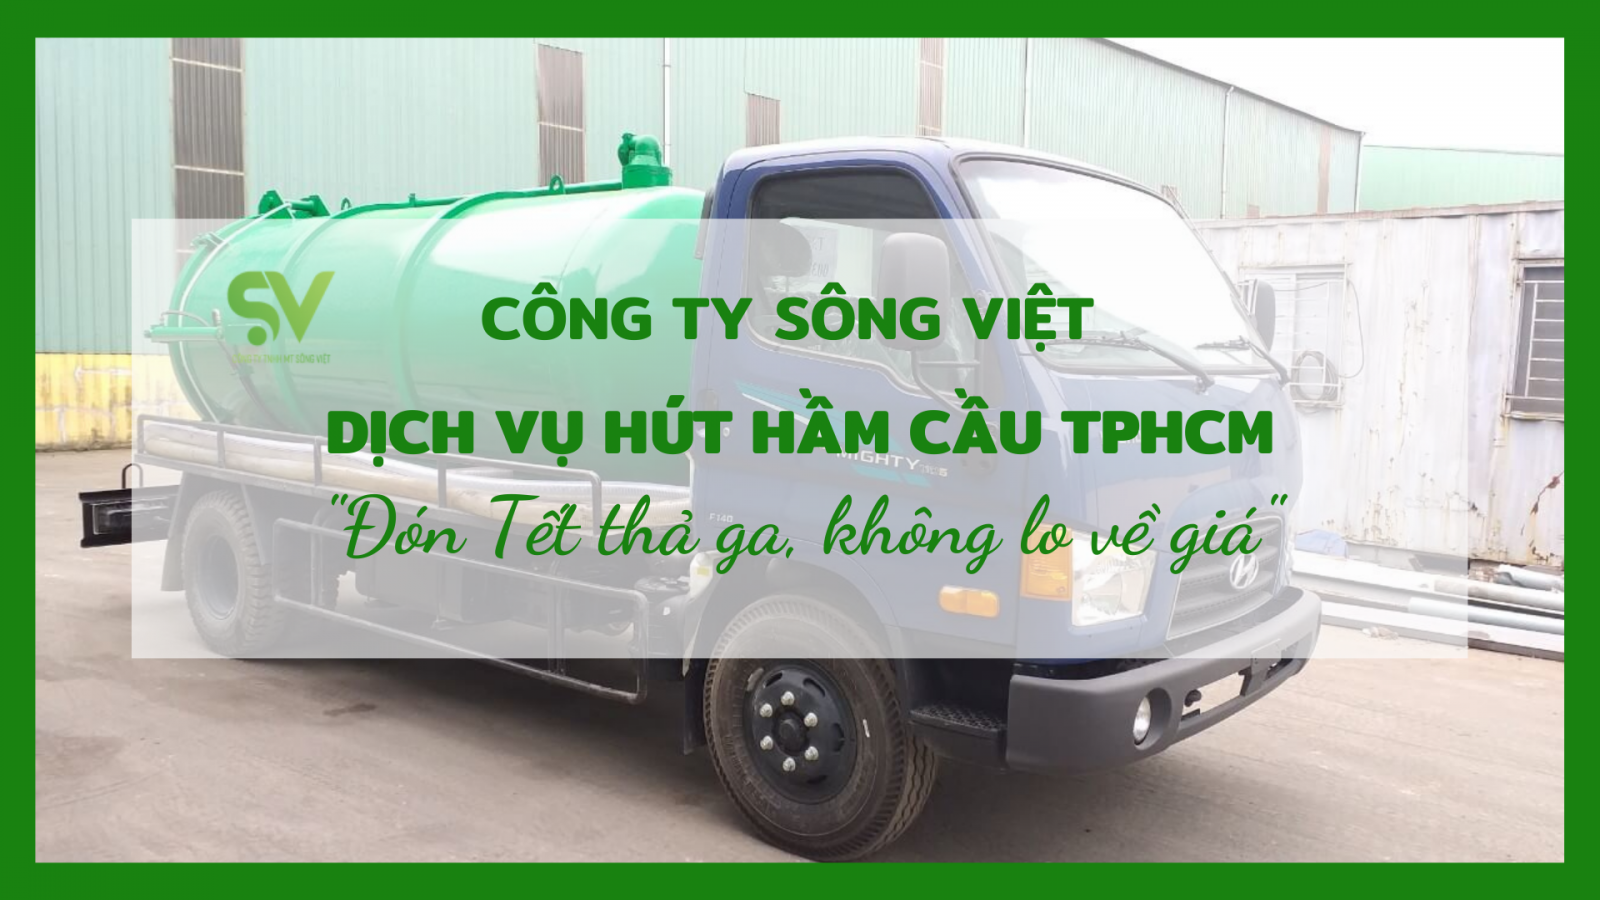 Dịch vụ hút hầm cầu TPHCM Sông Việt - Địa chỉ đáng tin cậy trong những ngày Tết cổ truyền